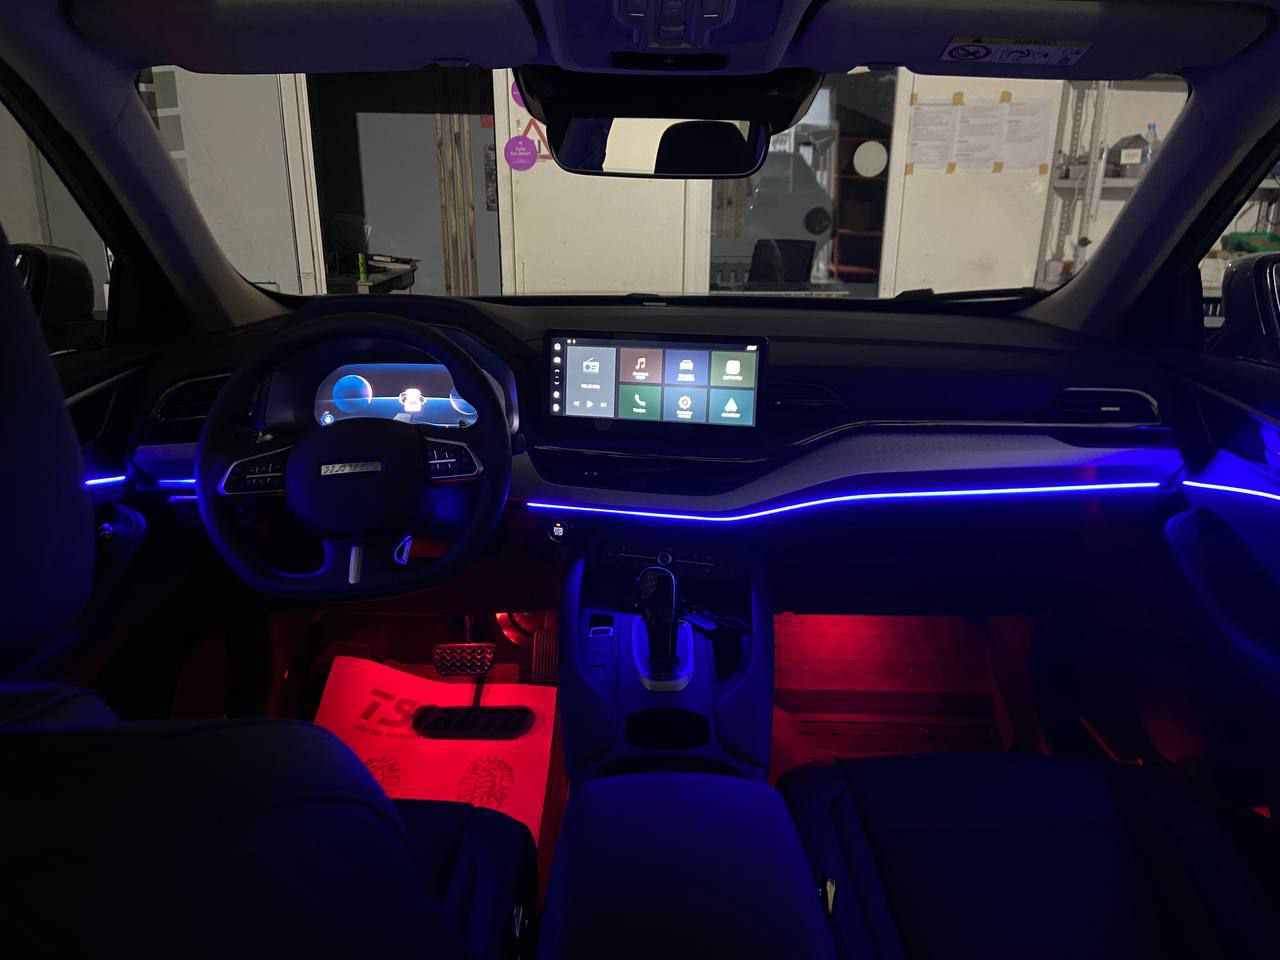 Неоновая нить, подсветка салона авто LED RGB BT управление телефоном 5 модуля